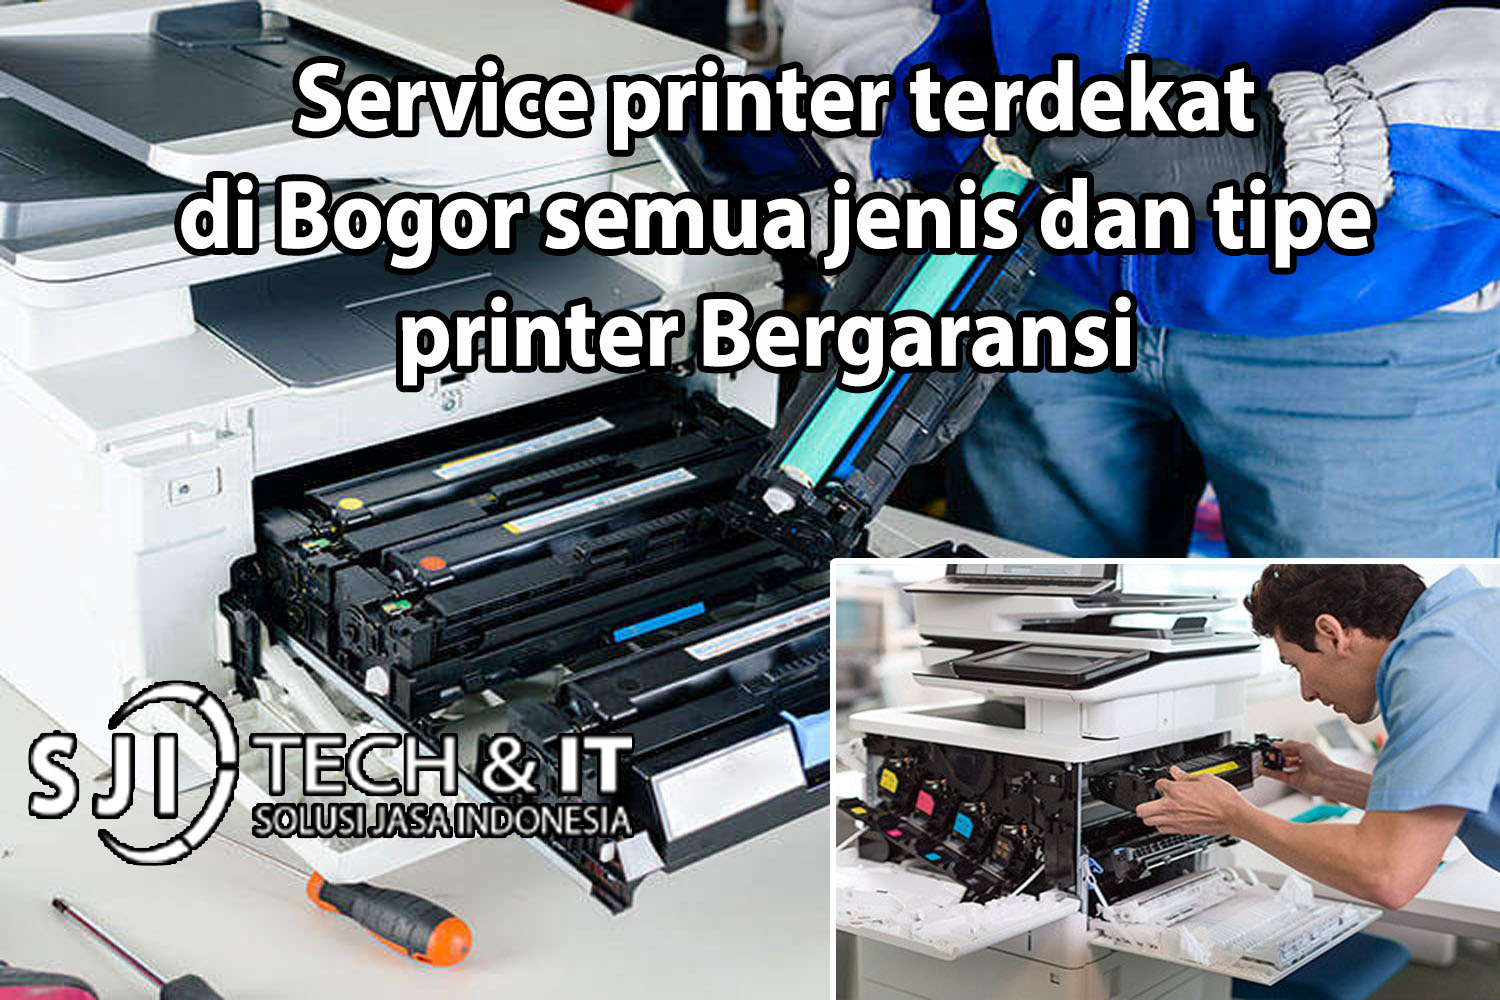 Service printer terdekat di Bogor semua jenis dan tipe printer Bergaransi